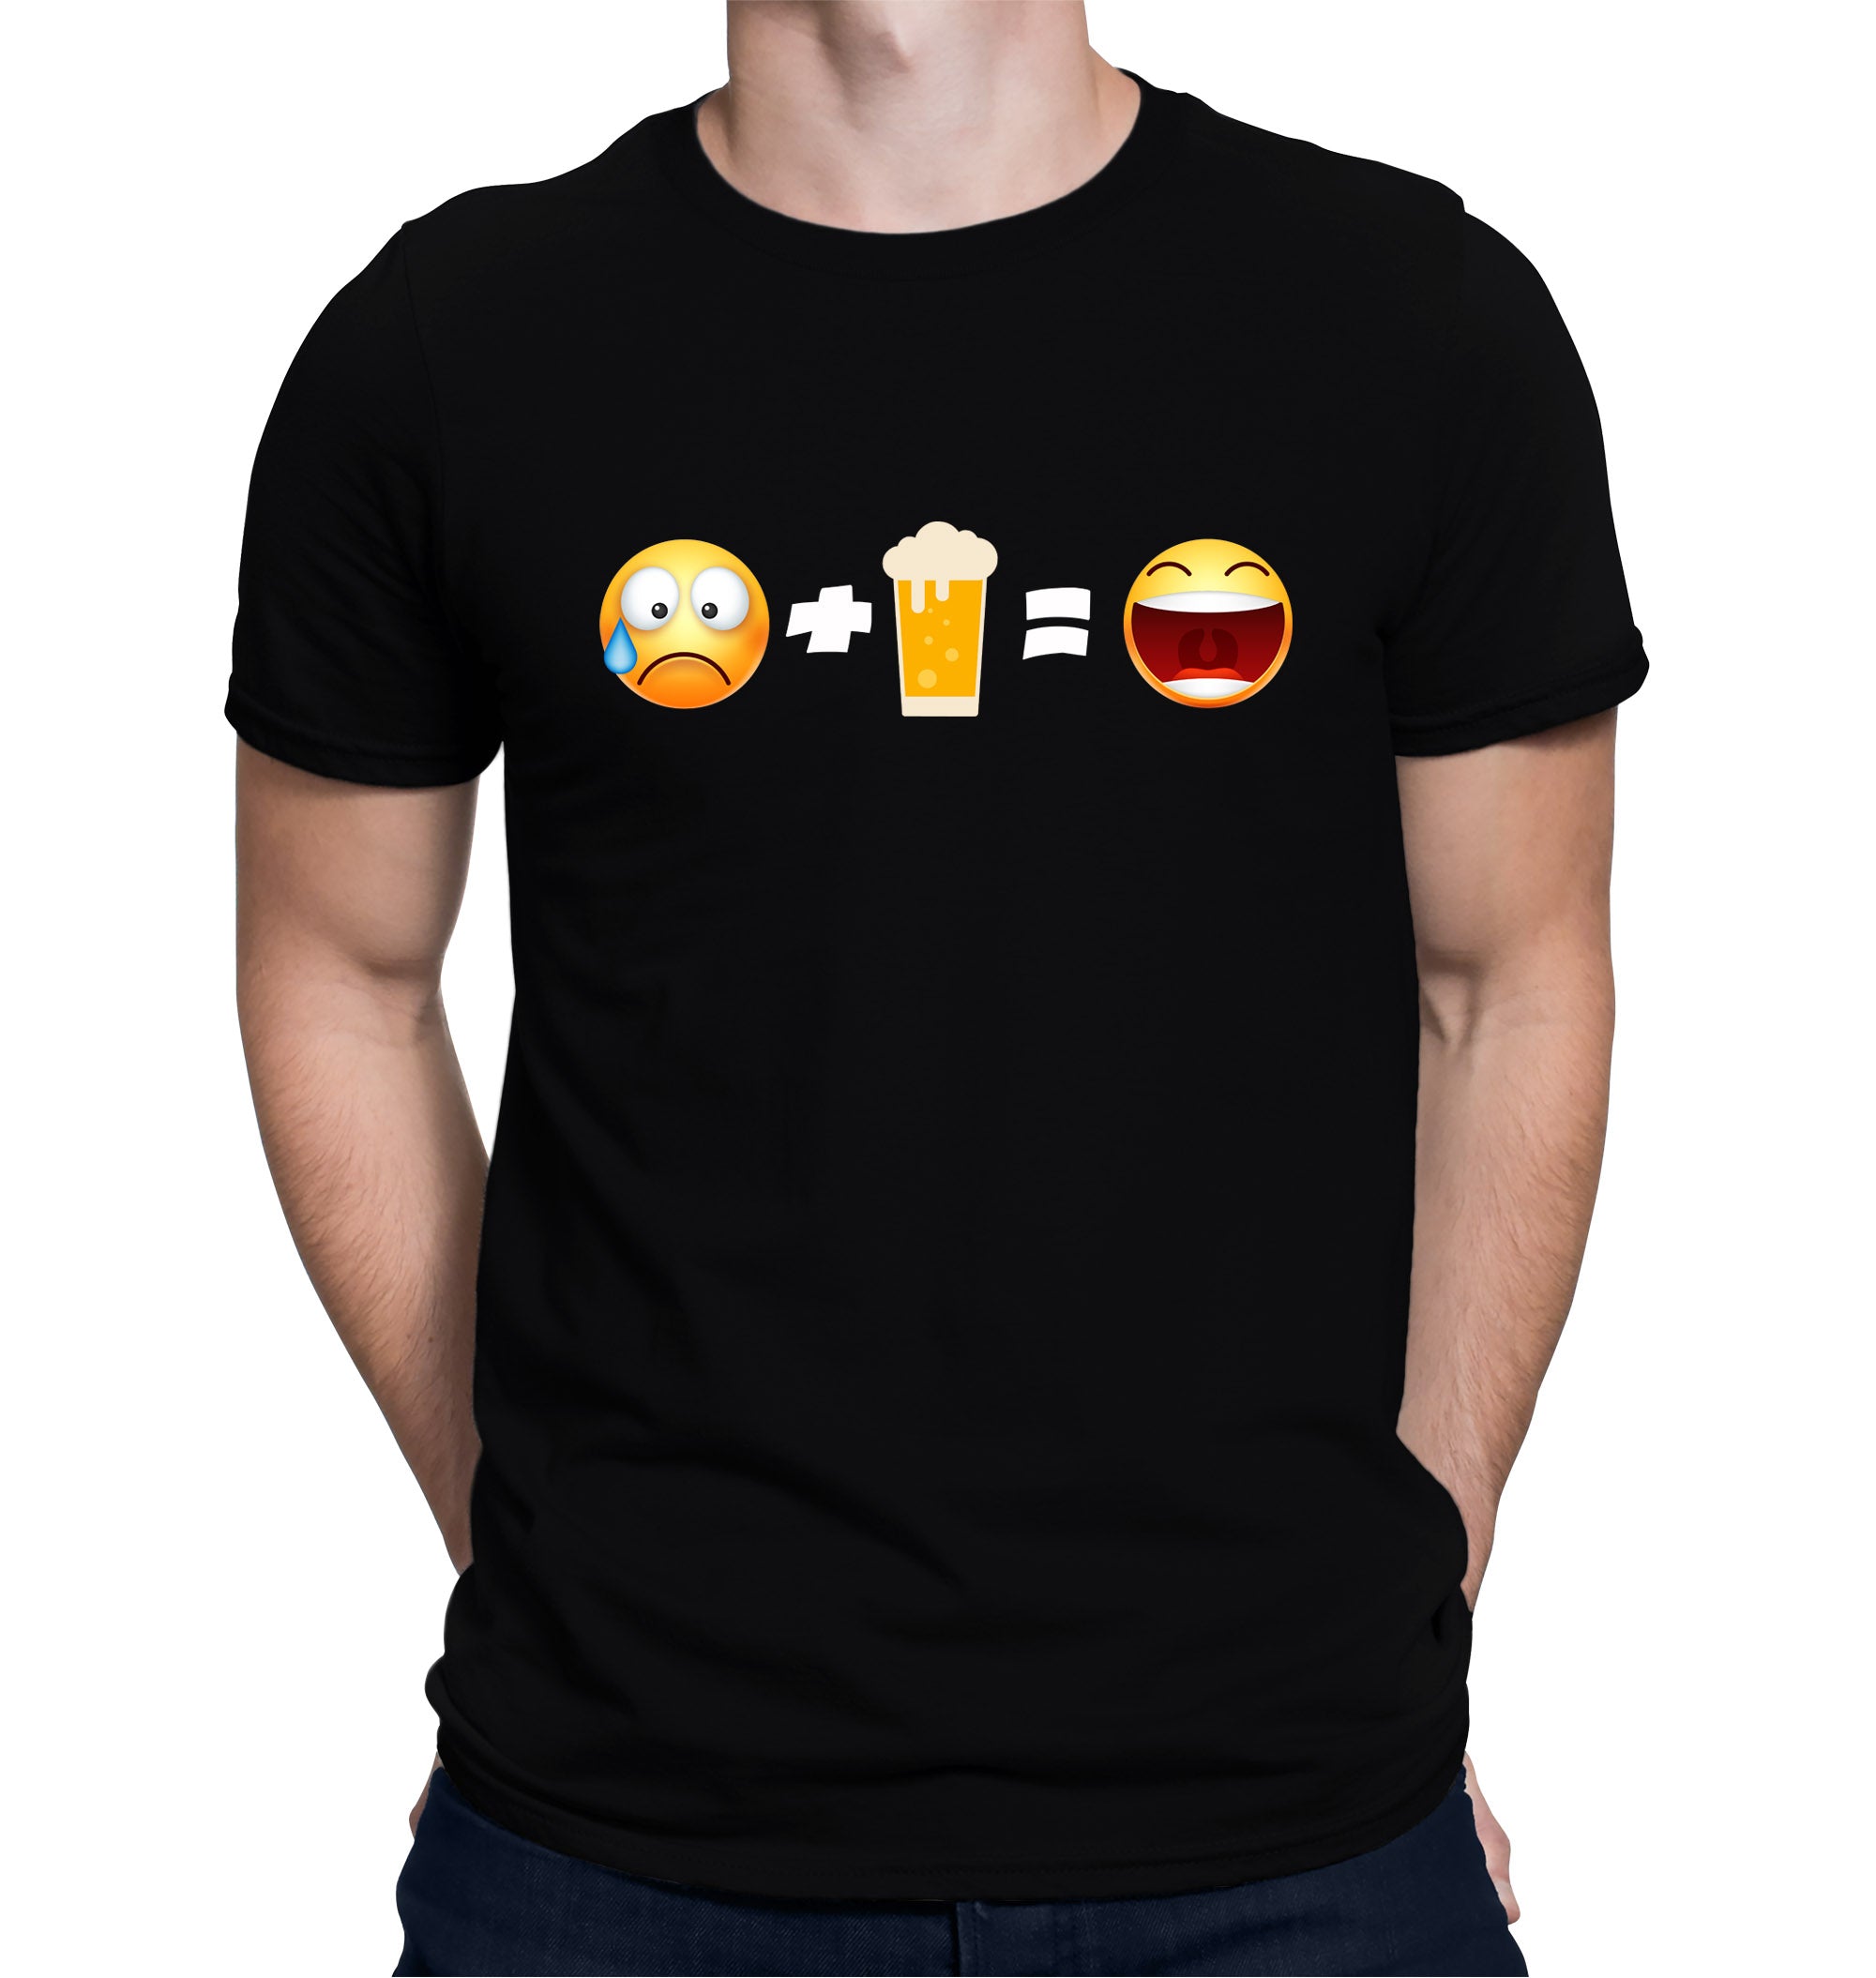 Sad Face + Beer = Happy Face Emoji Beer T-Shirt on Model